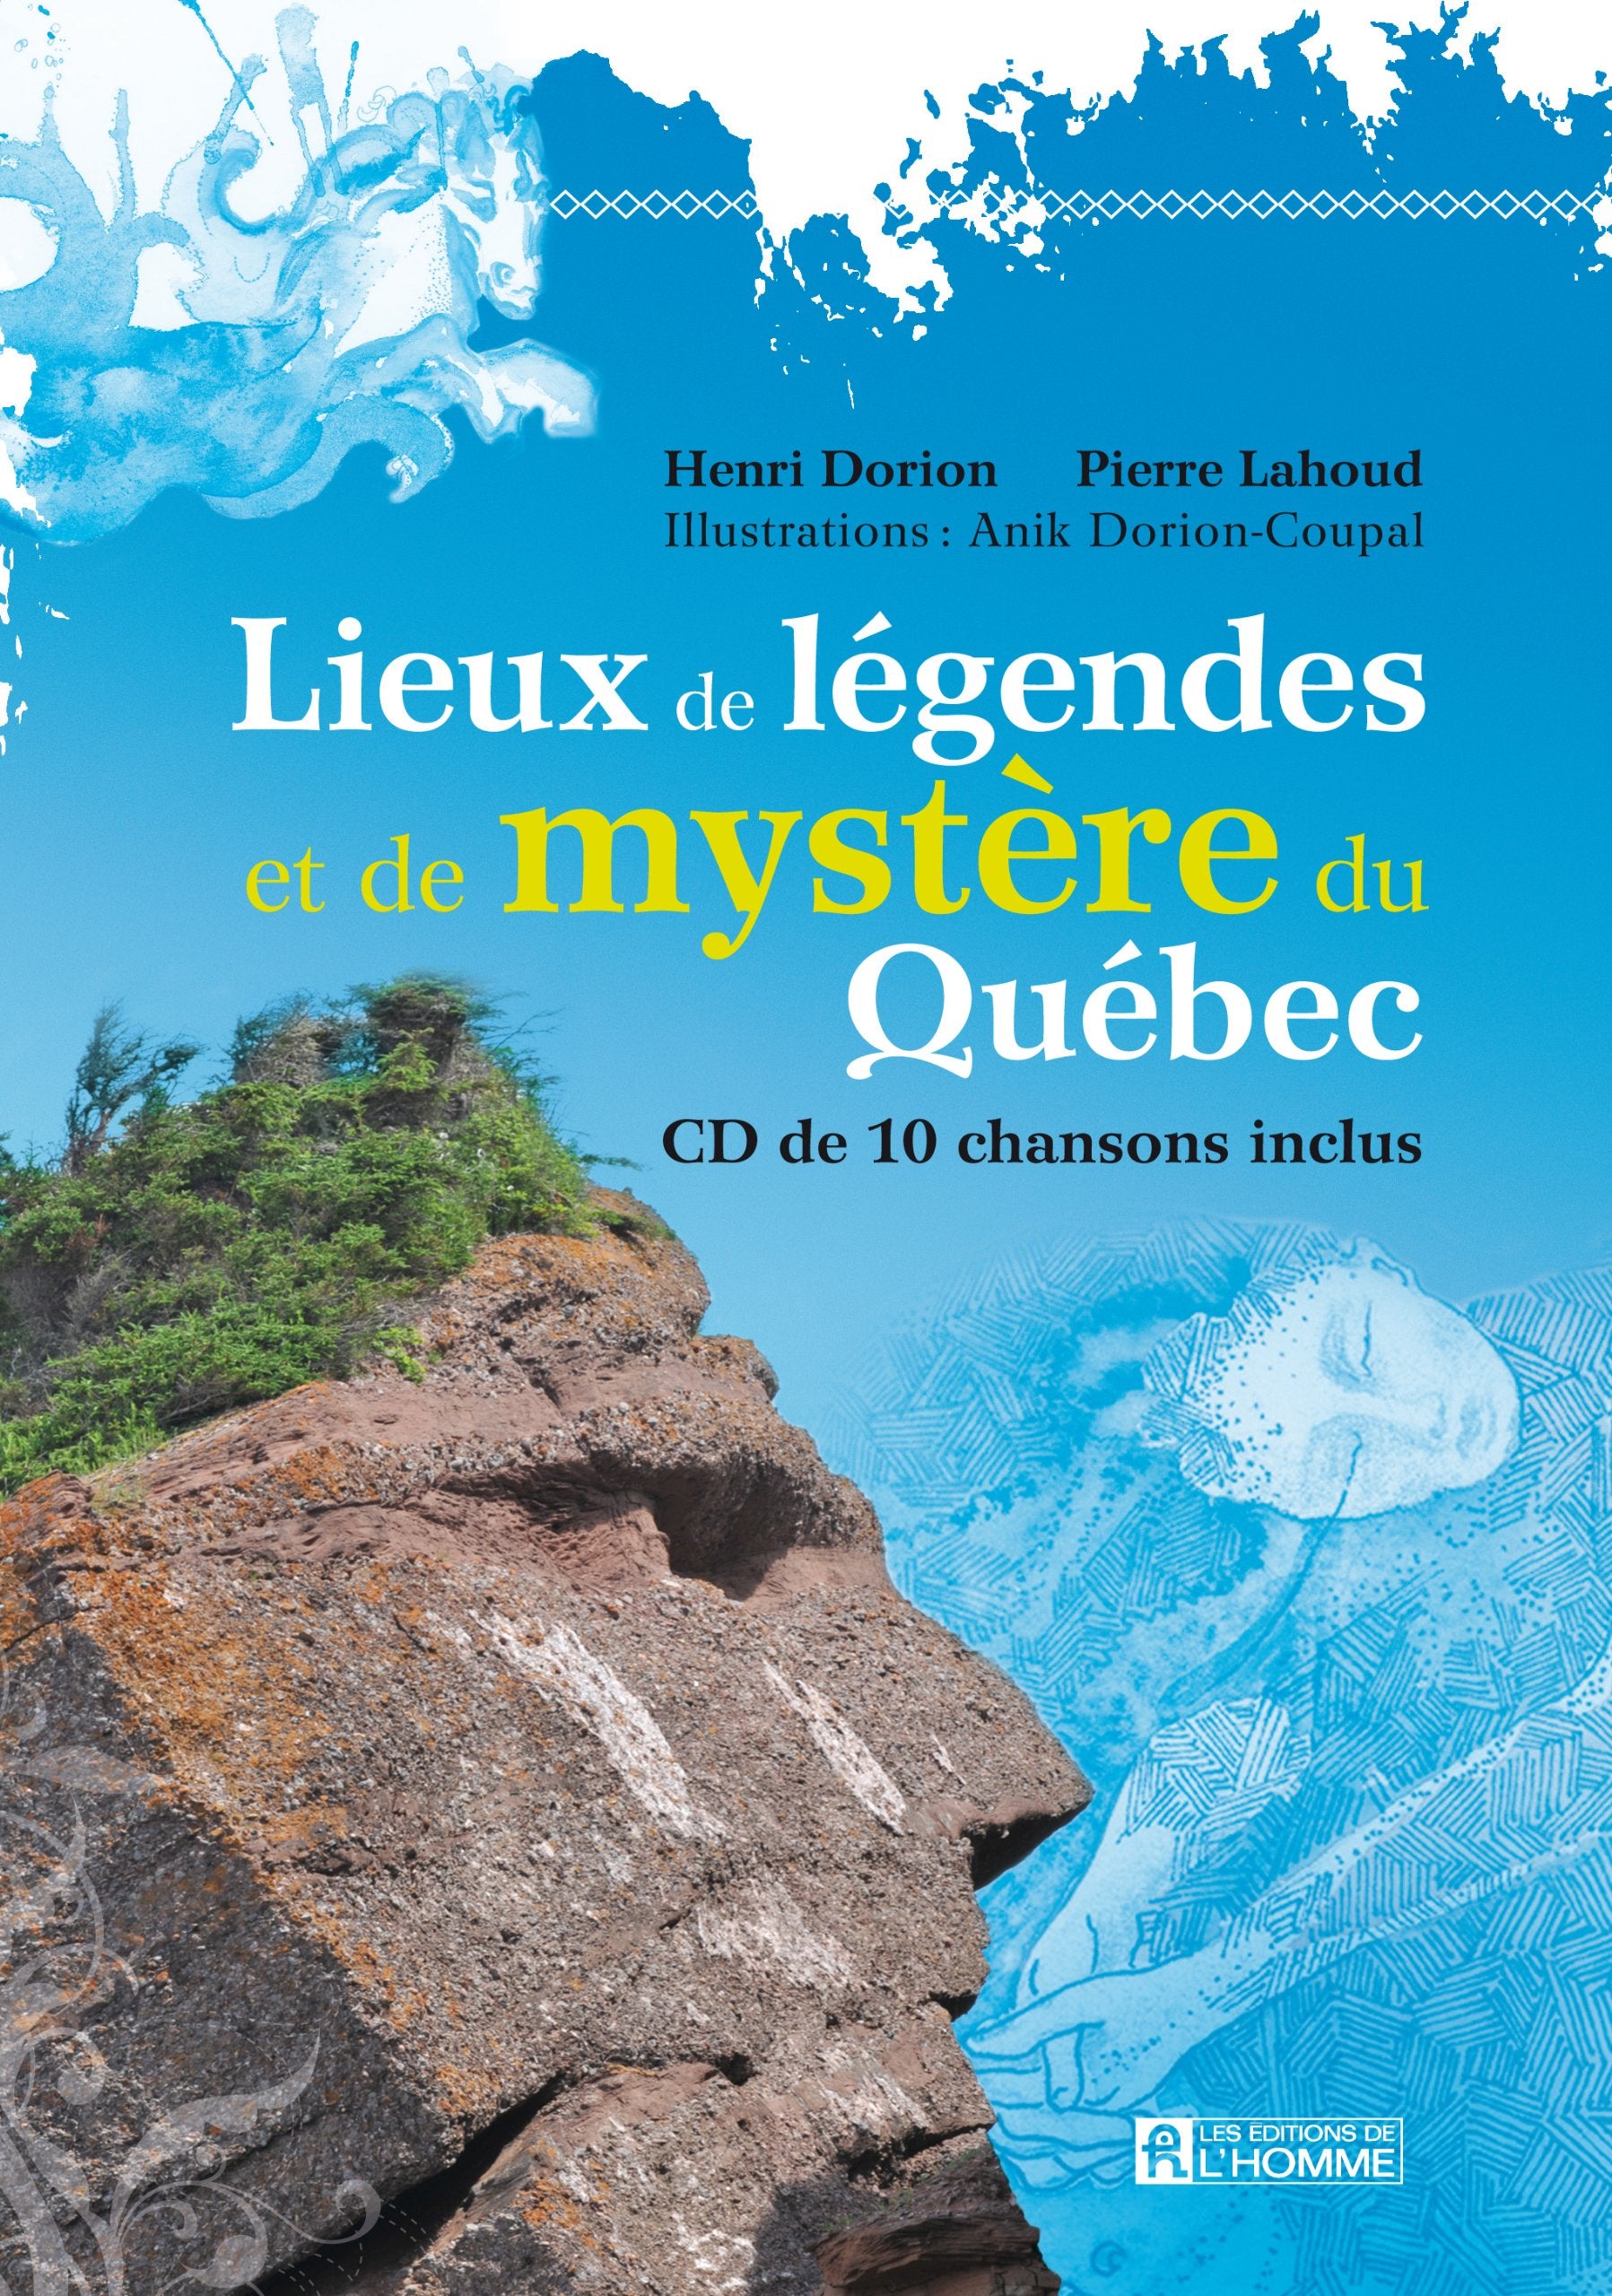 Lieux de légendes et de mystère du Québec - Henri Dorion